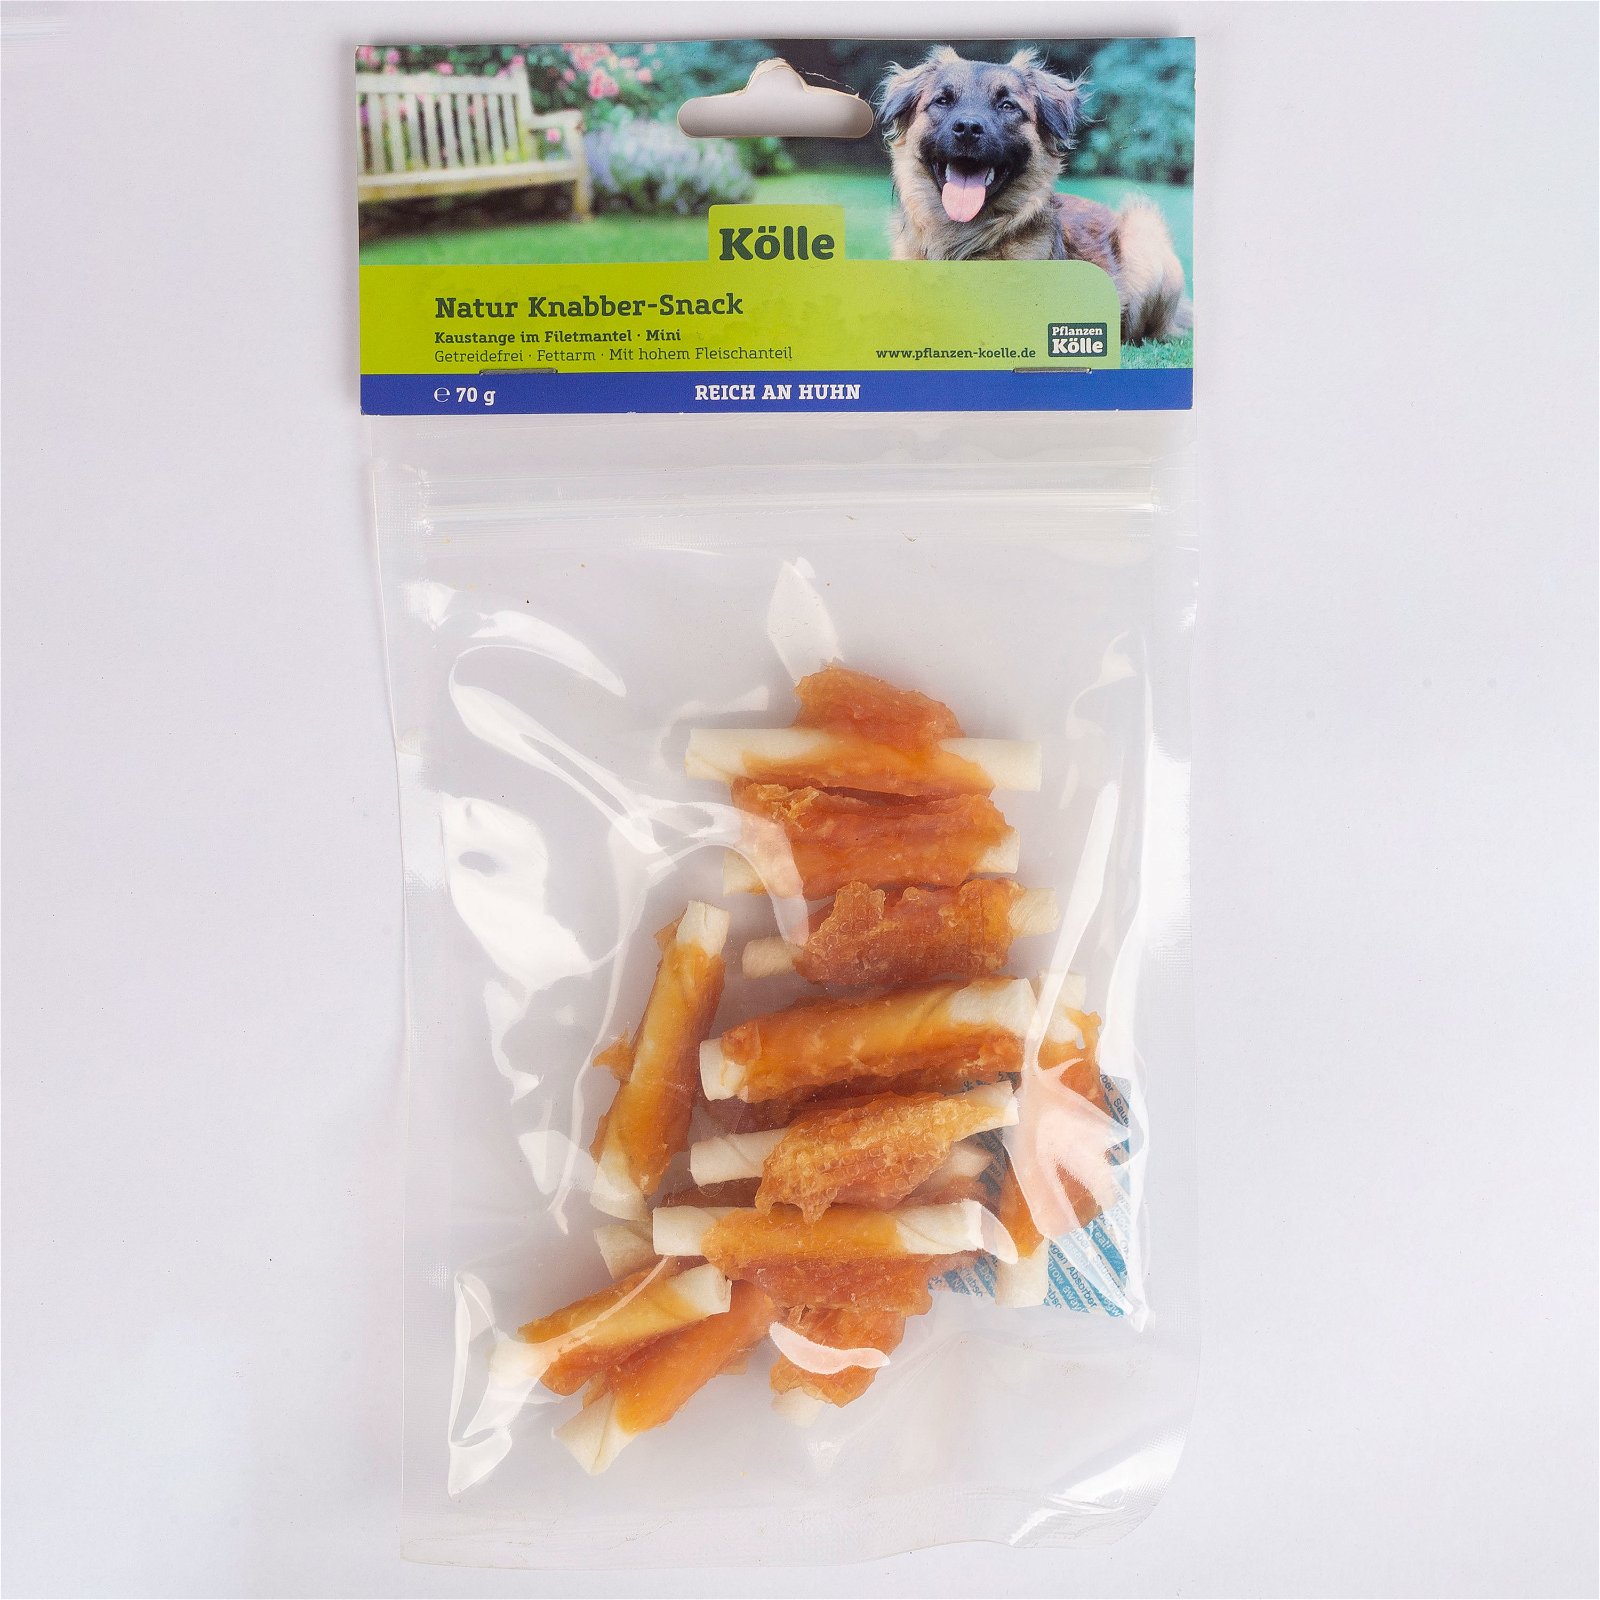 Natur Knabber-Snack für Hunde, Kaustange im Filetmantel mini, 150 g